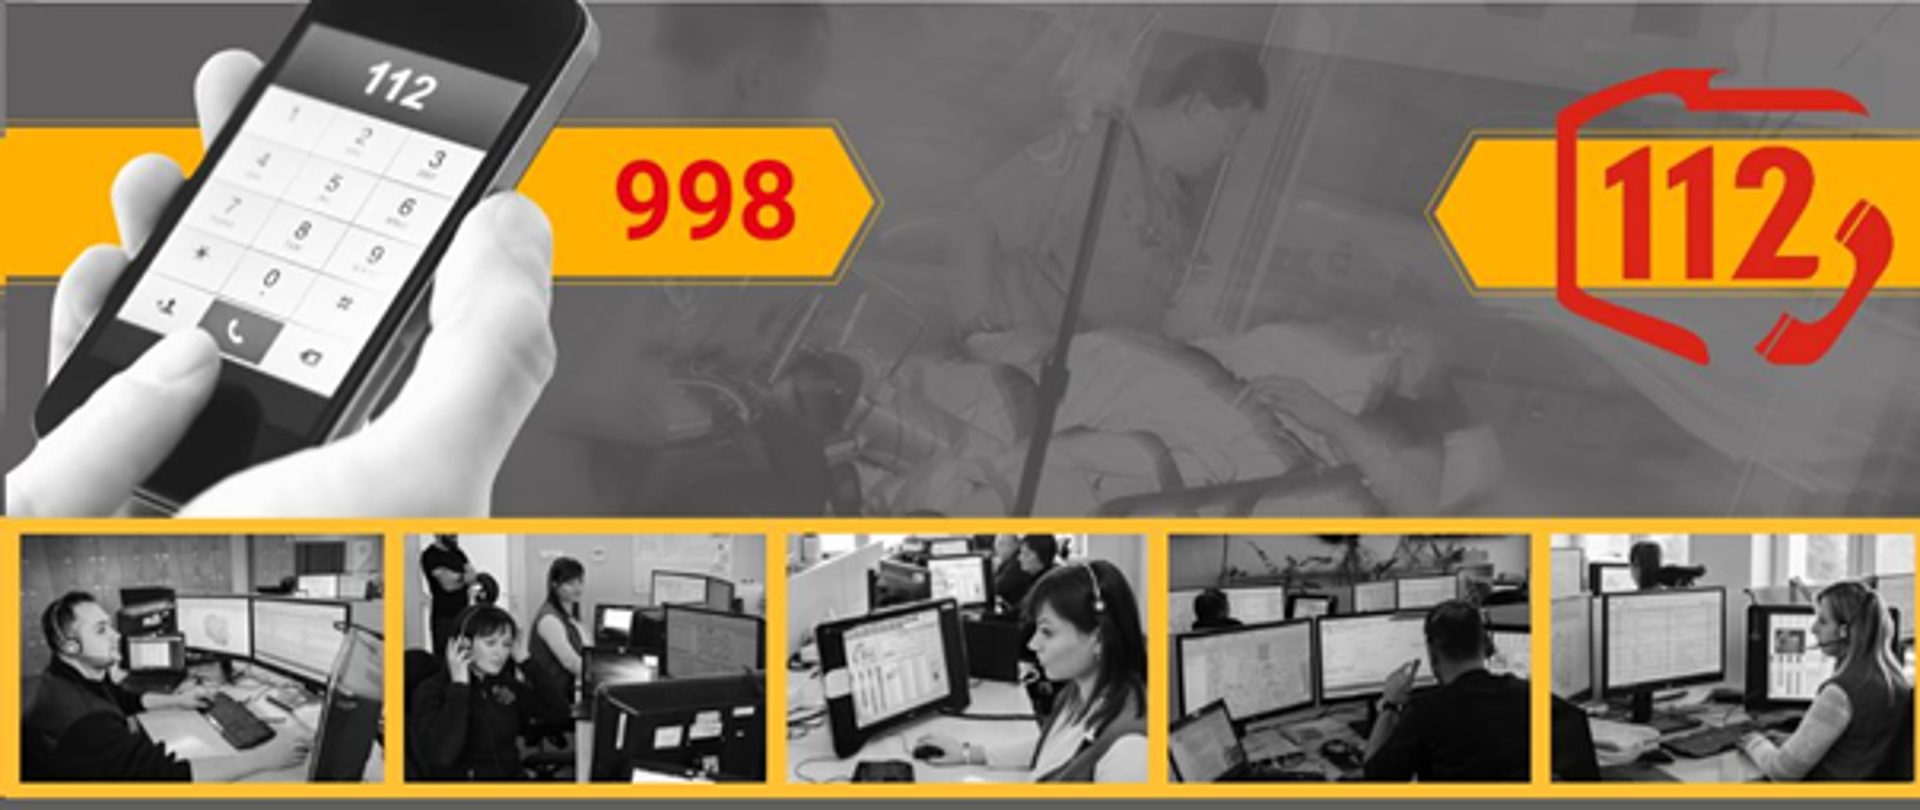 Plakat informacyjny dotyczący przełączenia numeru alarmowego 998 na 112. Na obrazku znajduje się telefon komórkowy i numery telefonów 998 i 112.